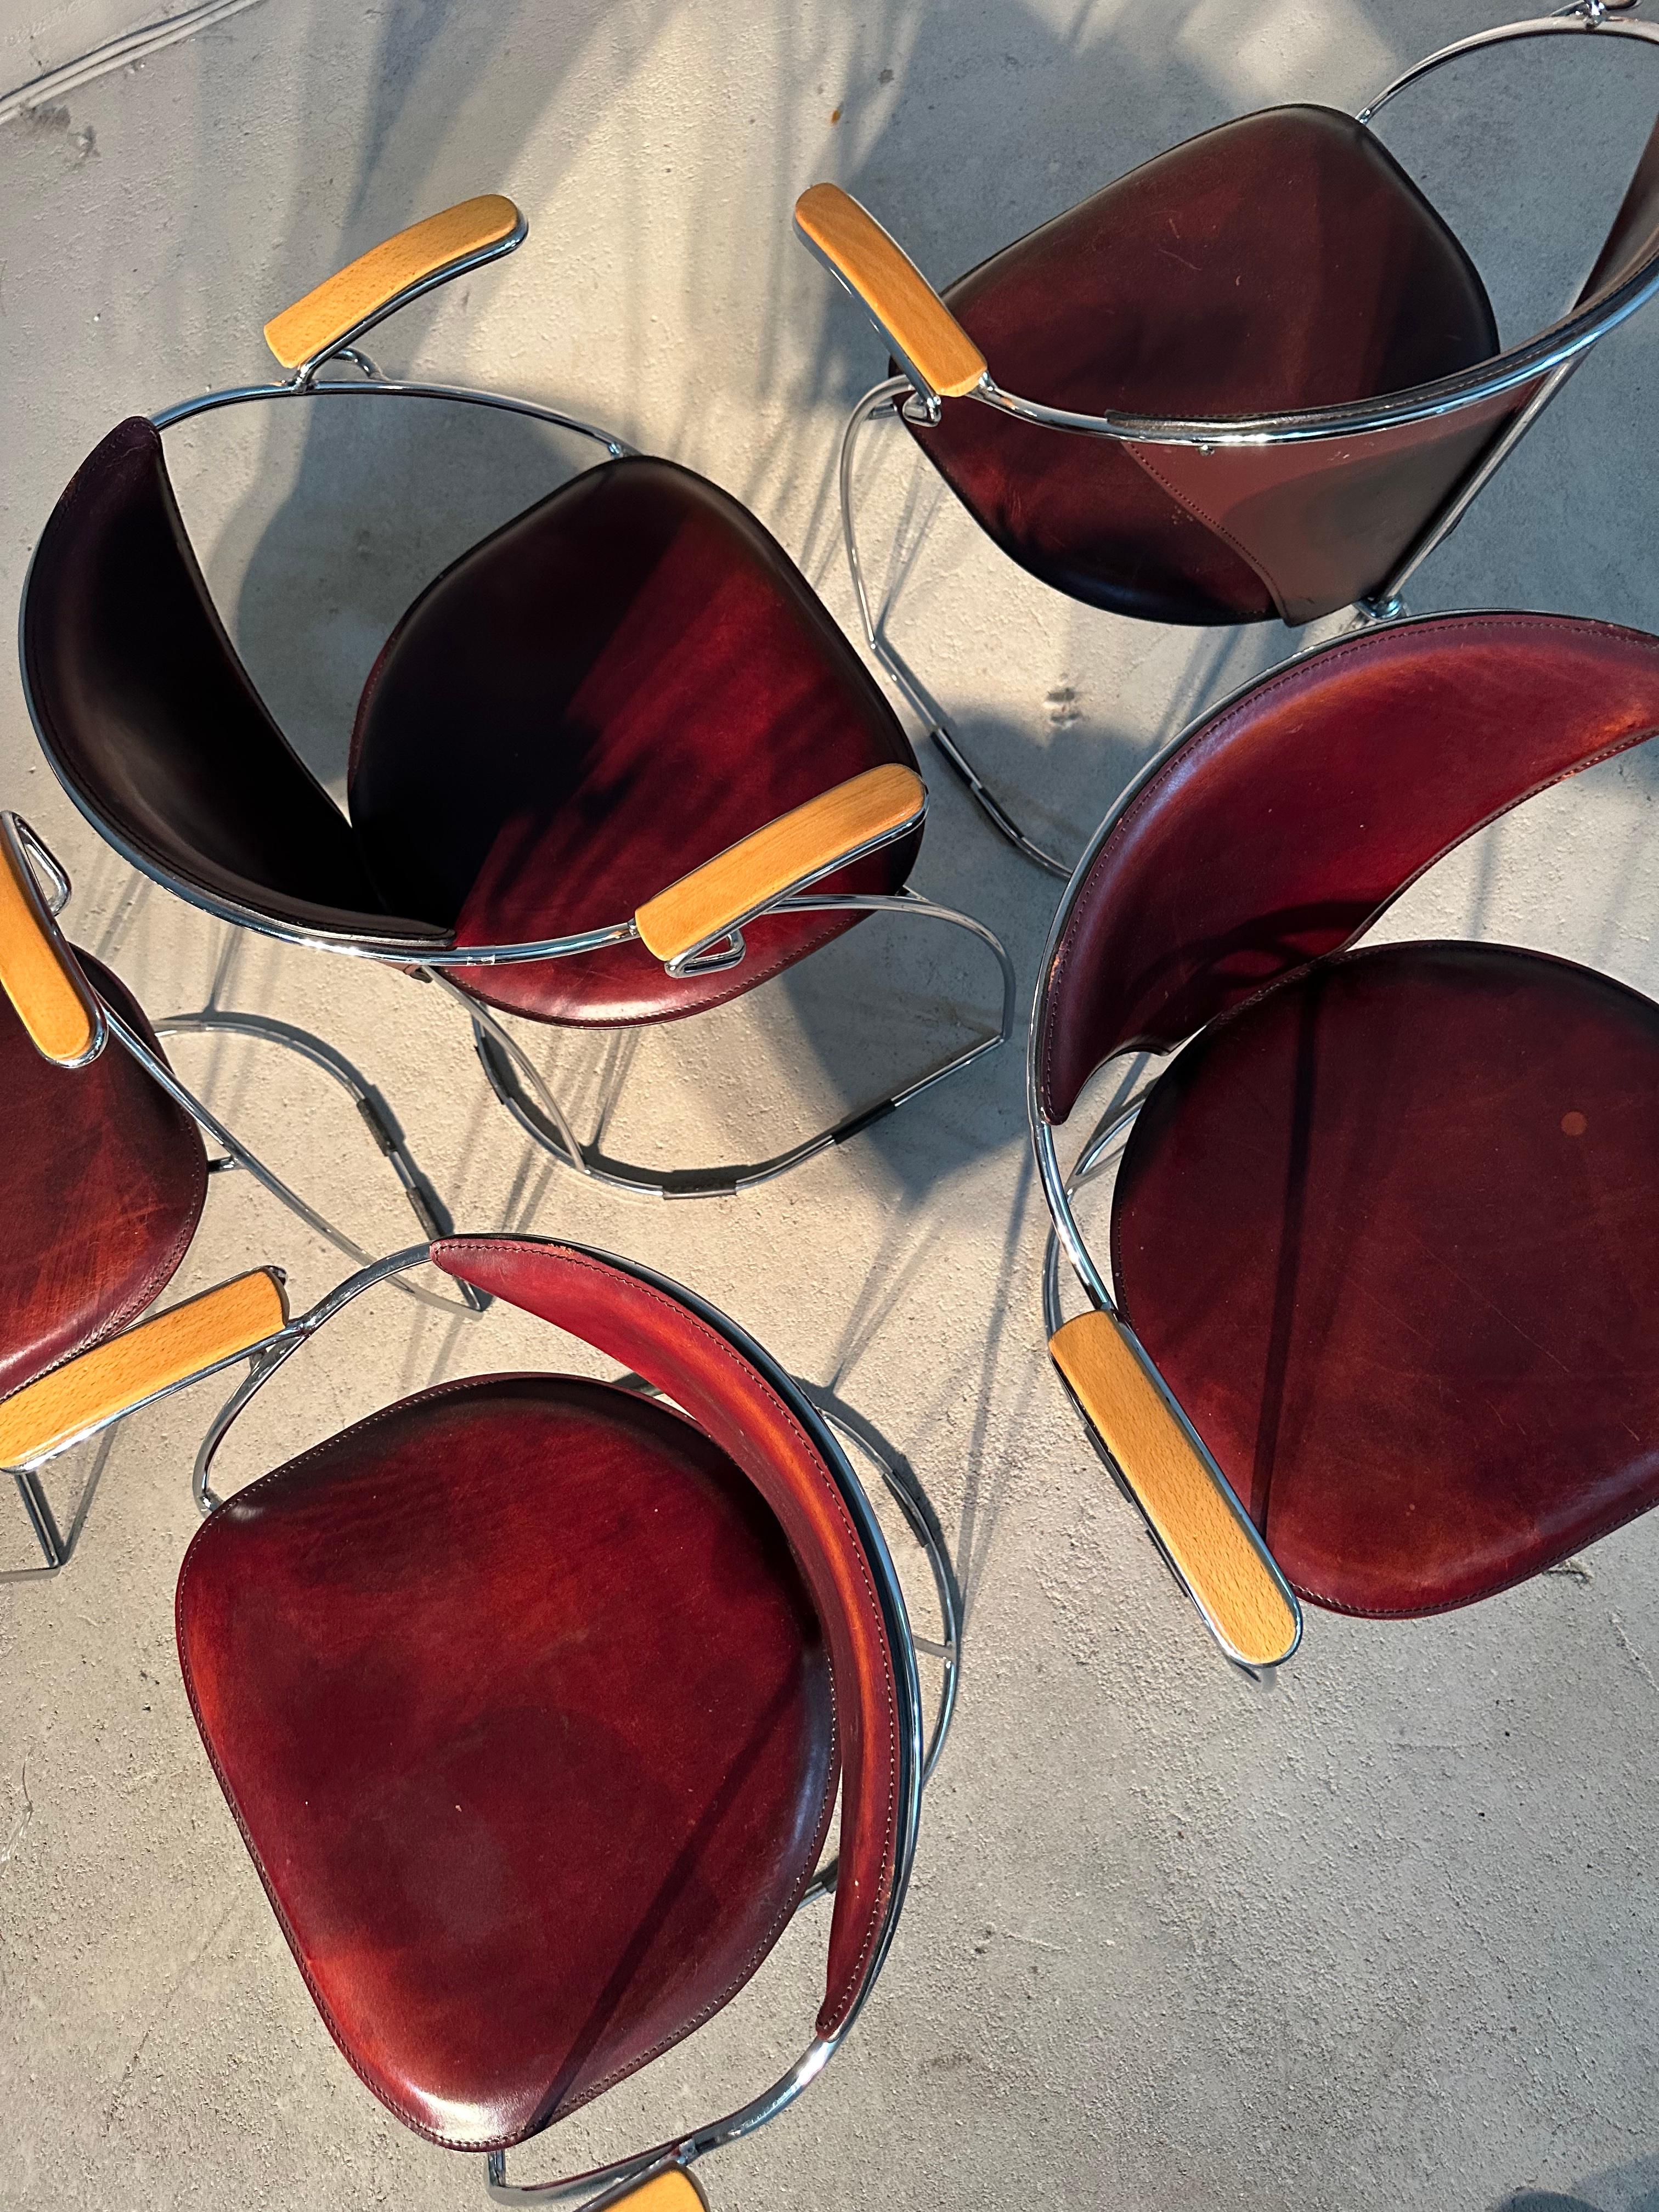 Ensemble de 5 chaises de salle à manger design italien par Arrben Italy, type Armlinda. Conçue dans les années 1980 et en très bon état vintage.

La chaise caractéristique est dotée d'un cadre en tube métallique chromé. Le siège et le dossier